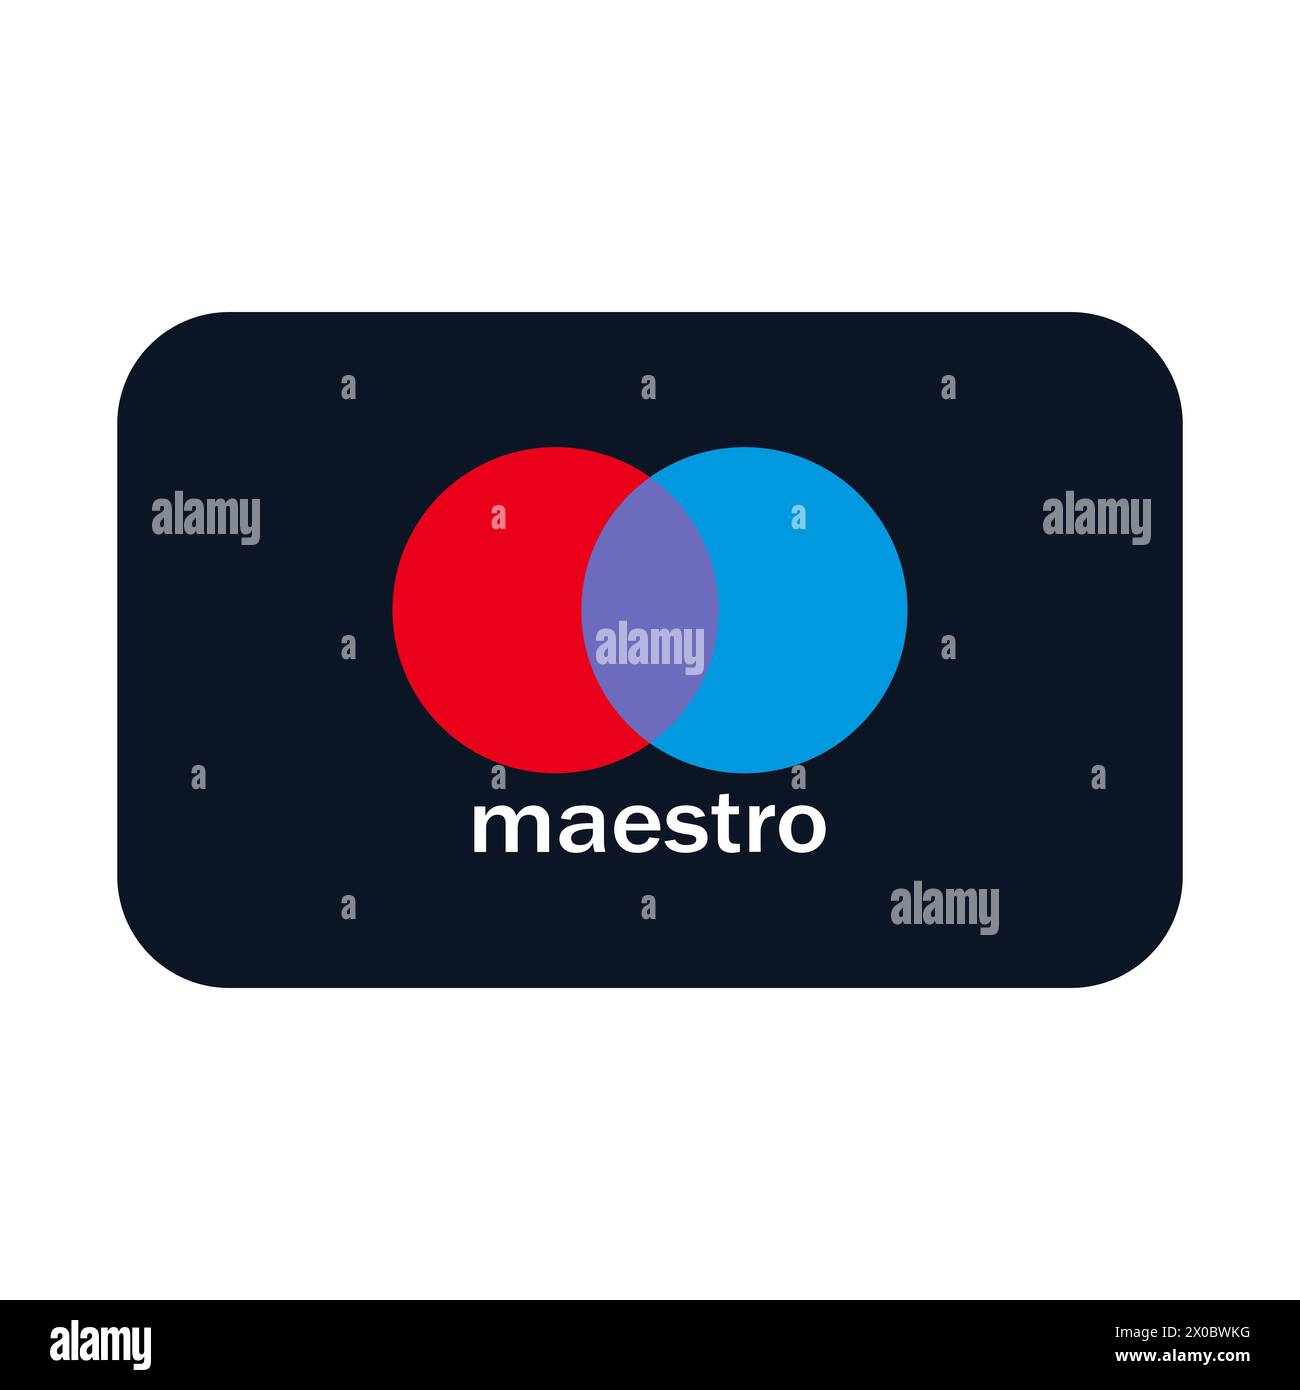 Mastercard-Logo auf weißem Hintergrund. Mastercard Inc.-Logo. Internationales Zahlungssystem, Transaktionen, Geldtransfers, Banken, Finanzunternehmen Stock Vektor